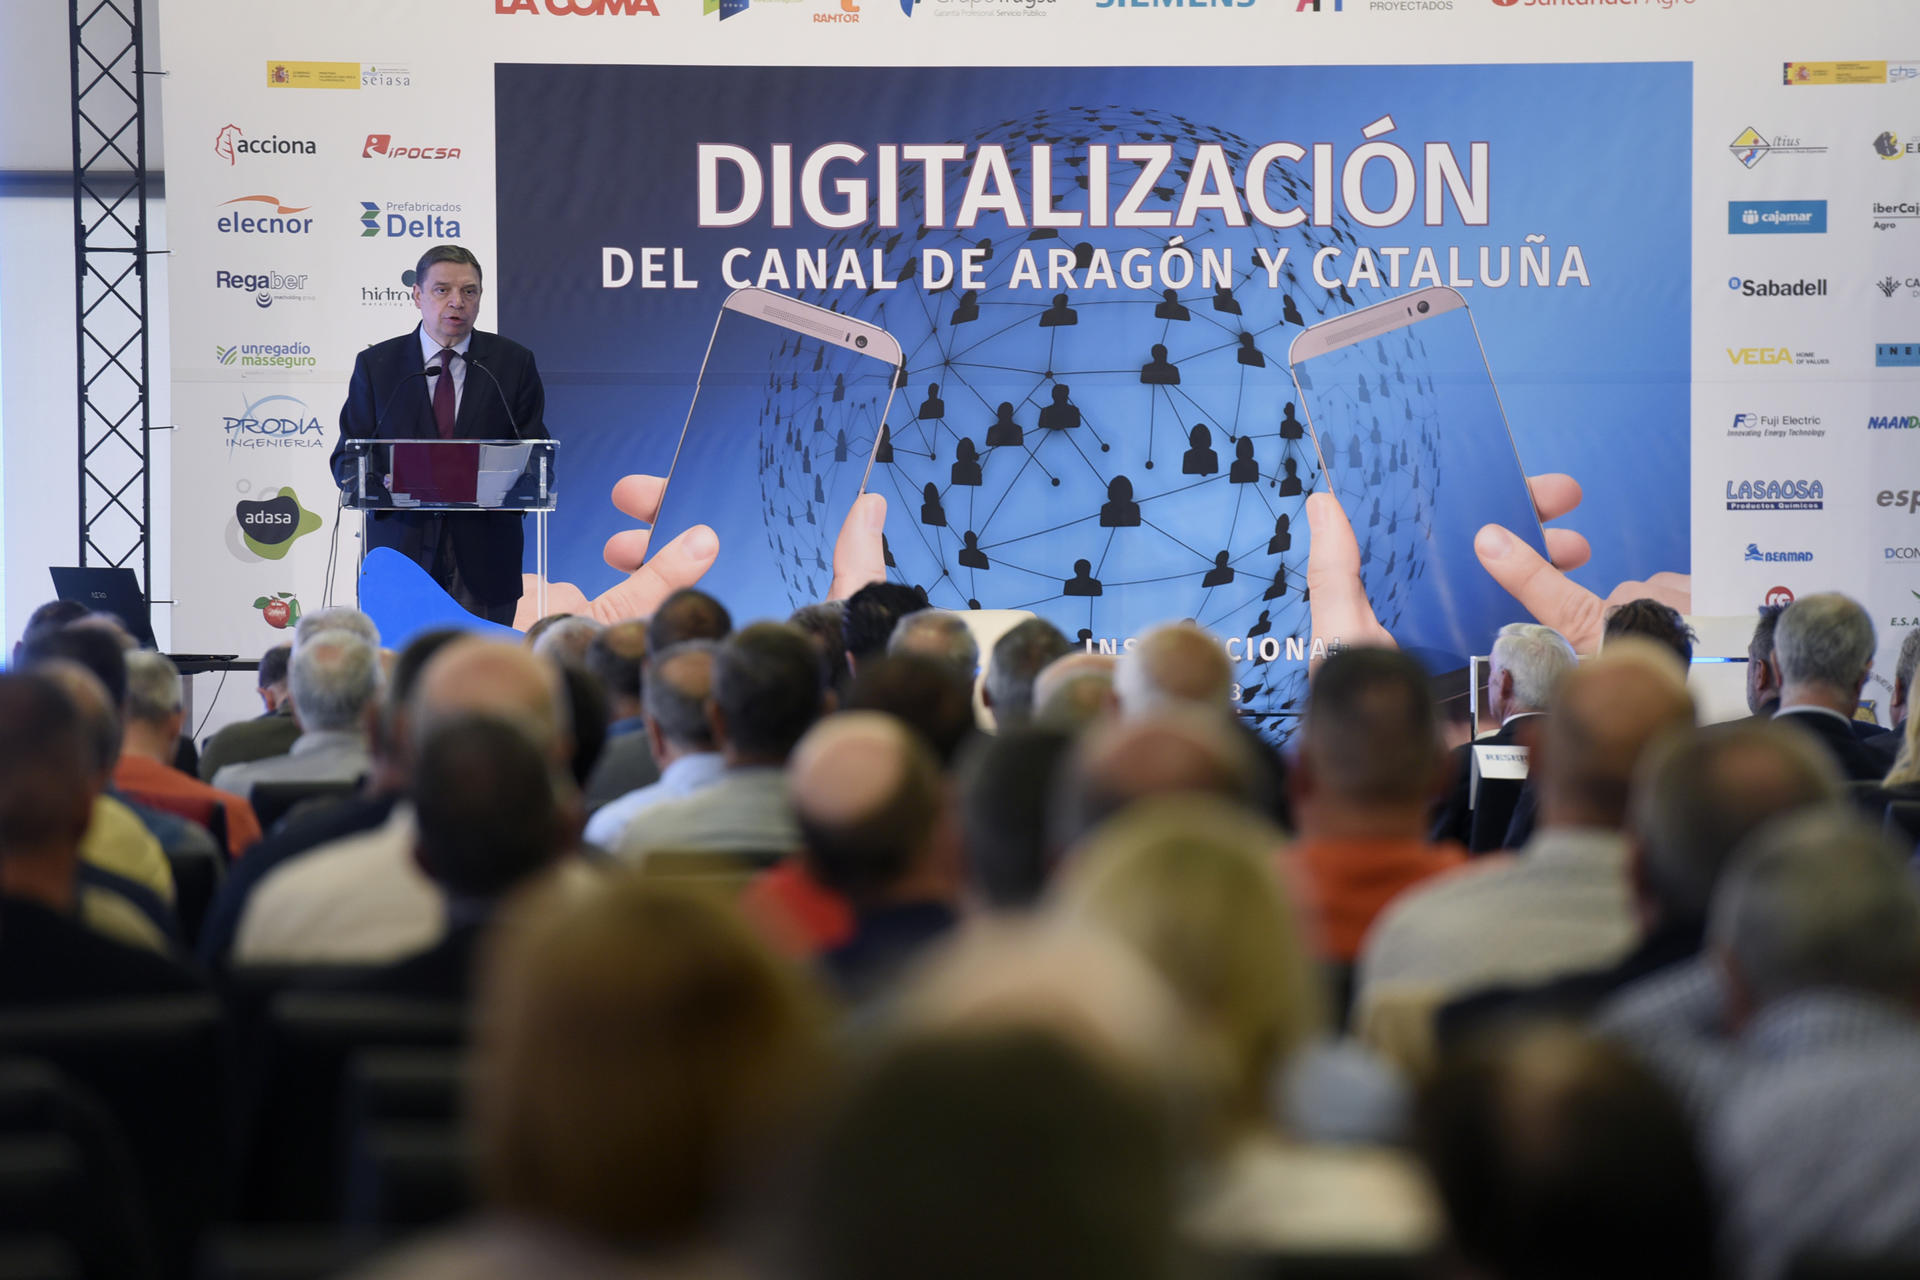 El ministro de Agricultura, Pesca y Alimentación, Luis Planas, asiste a la jornada "Digitalización del Canal de Aragón y Cataluña", que organiza la Comunidad de Regantes del Canal de Aragón y Cataluña. EFE/ Javier Blasco
